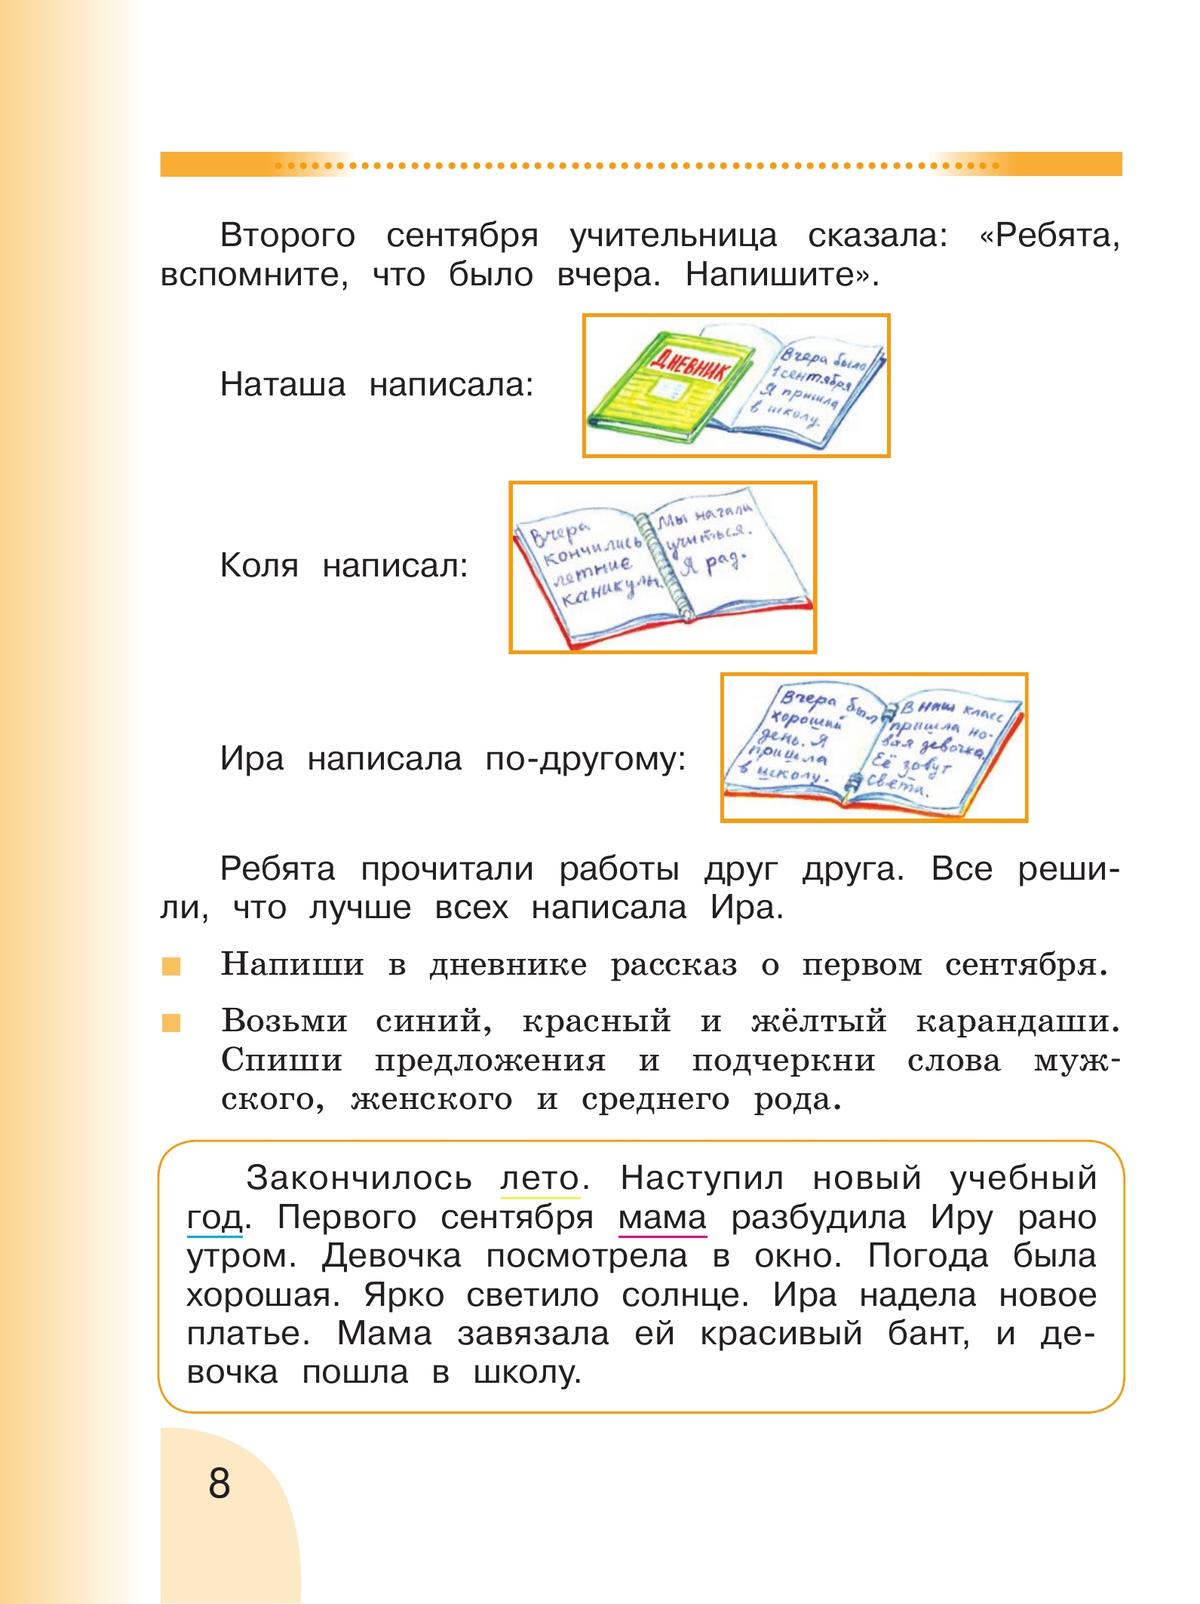 Русский язык. Развитие речи. 2 класс. Учебник. В 2 ч. Часть 1 (для глухих обучающихся) 8